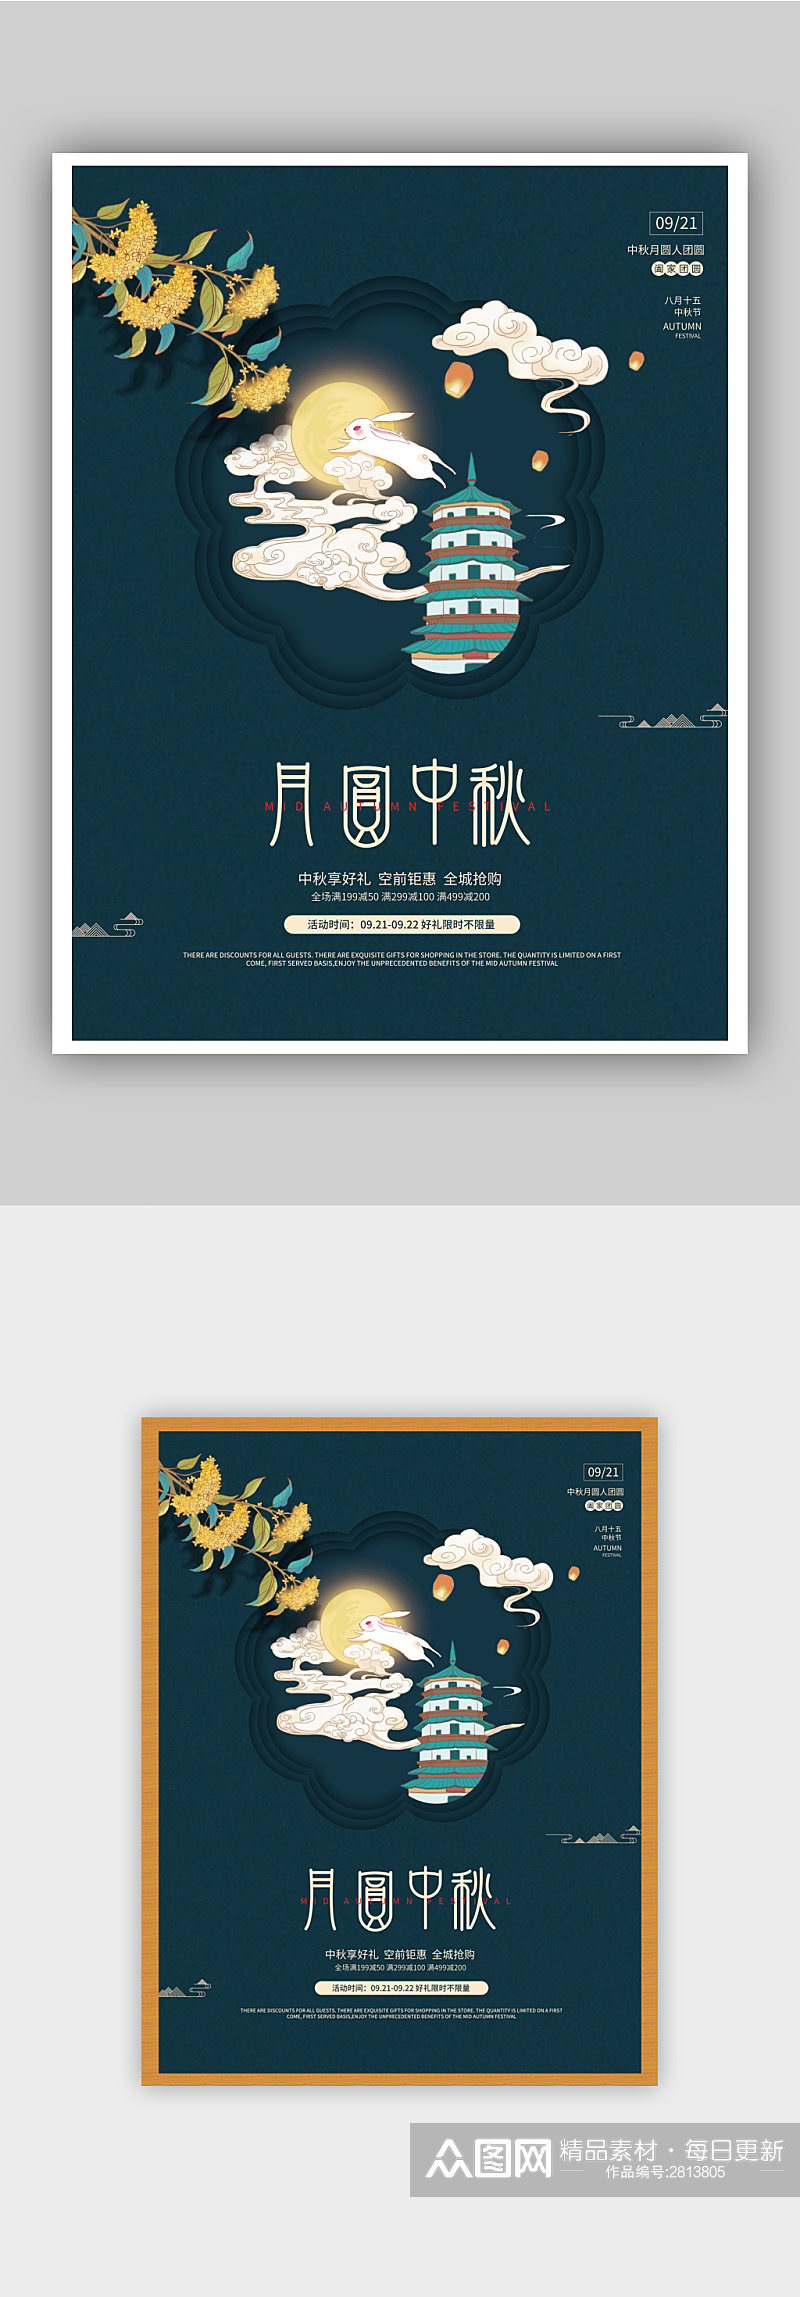 简约中国风中秋节节日促销海报素材